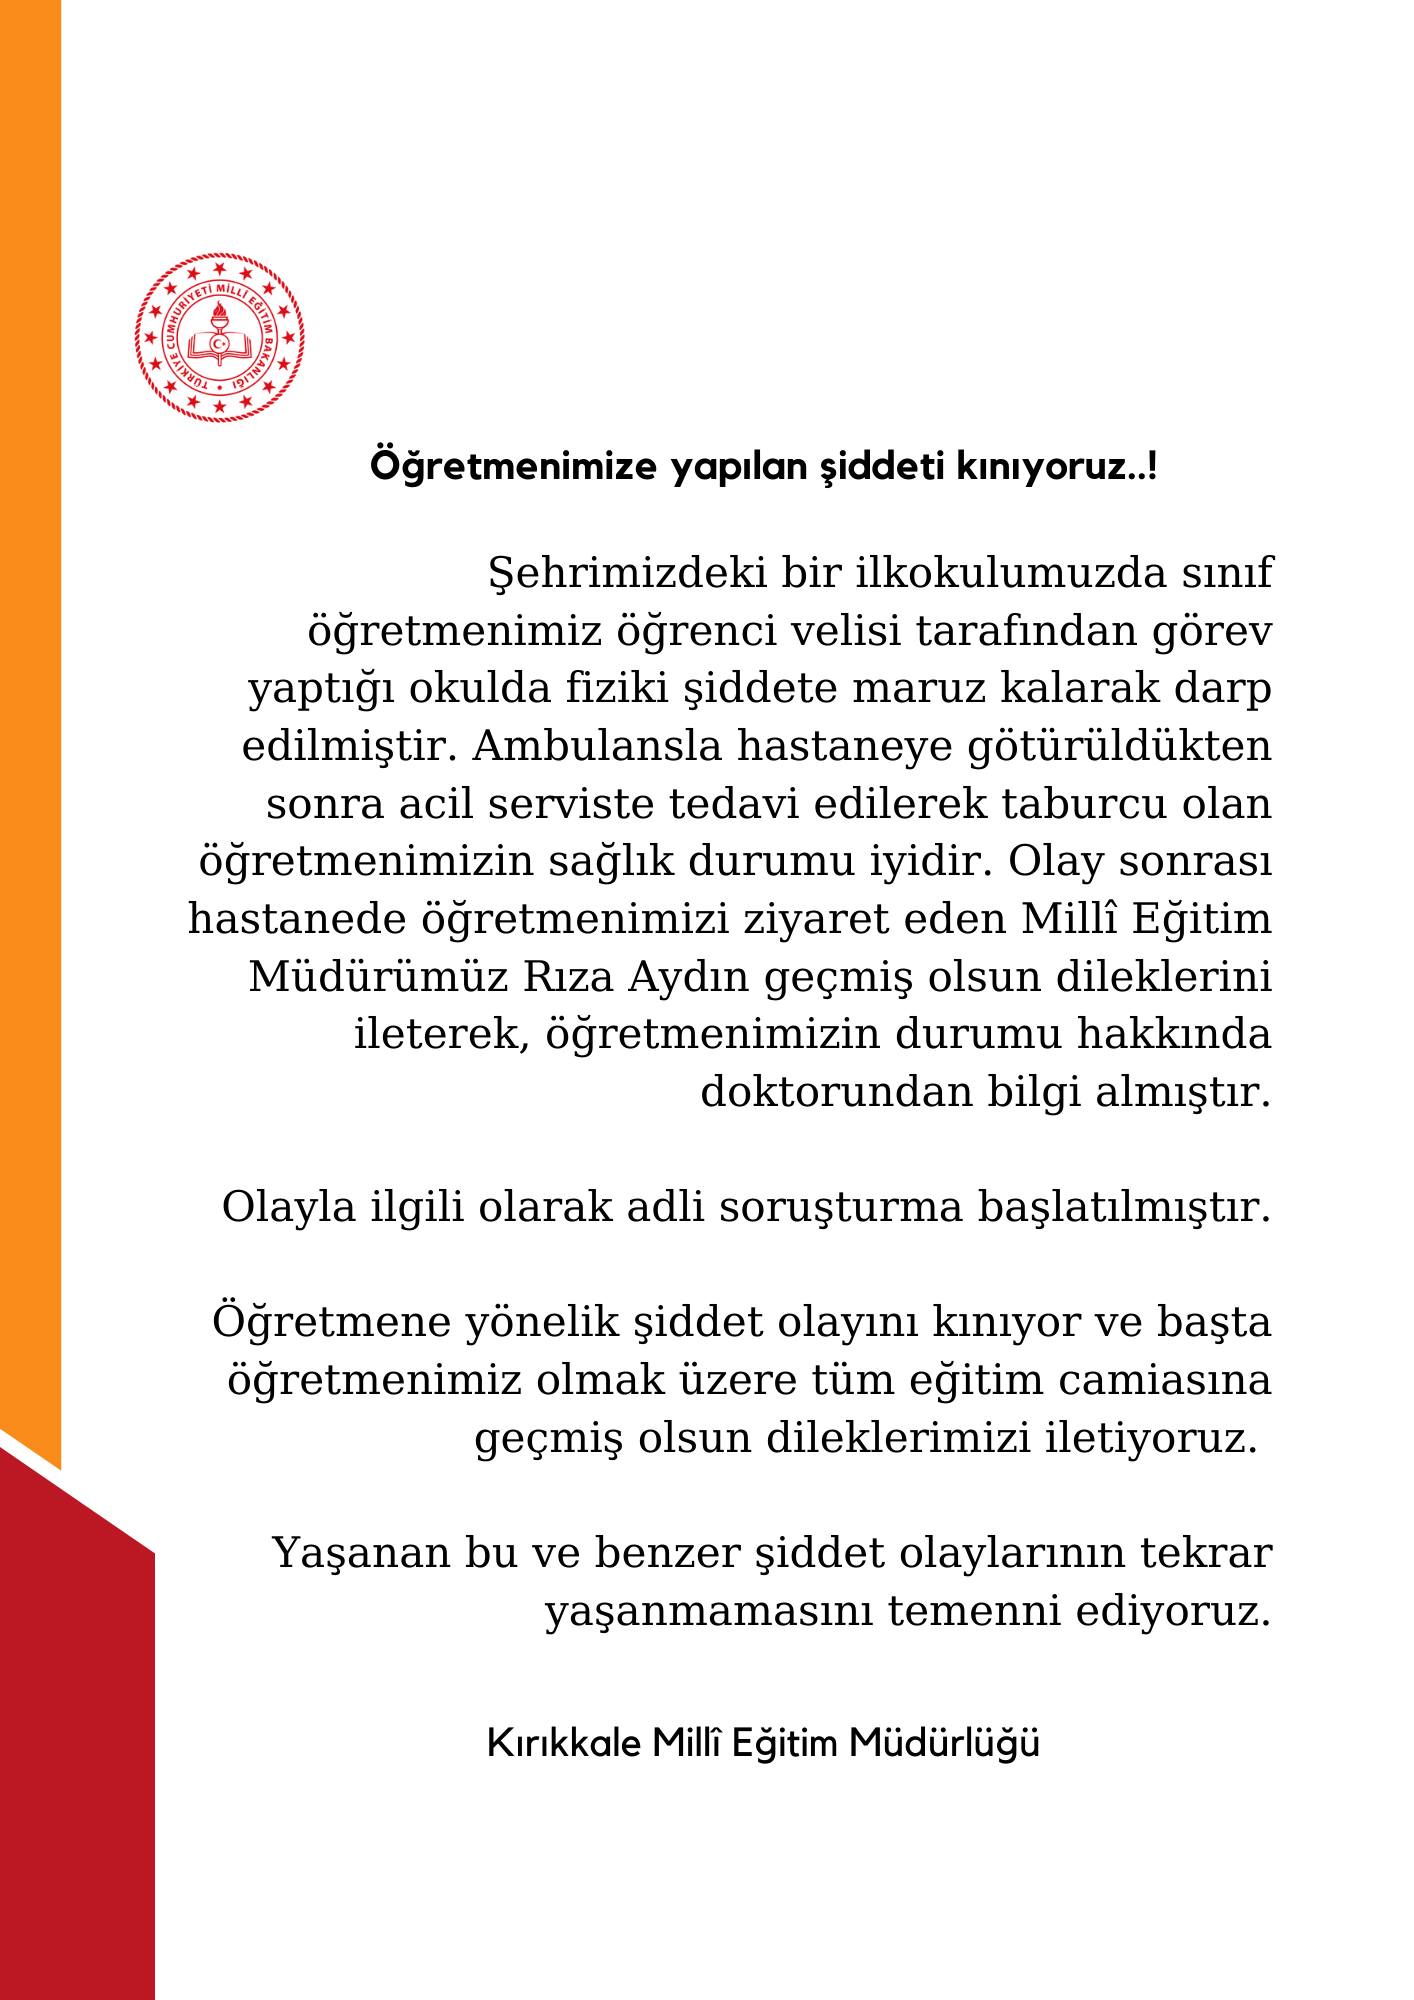 442492620_1603596747153536_2636195872063648389_n Kırıkkale'de Öğretmene Şiddet: Milli Eğitim Müdürlüğü Açıklama Yaptı